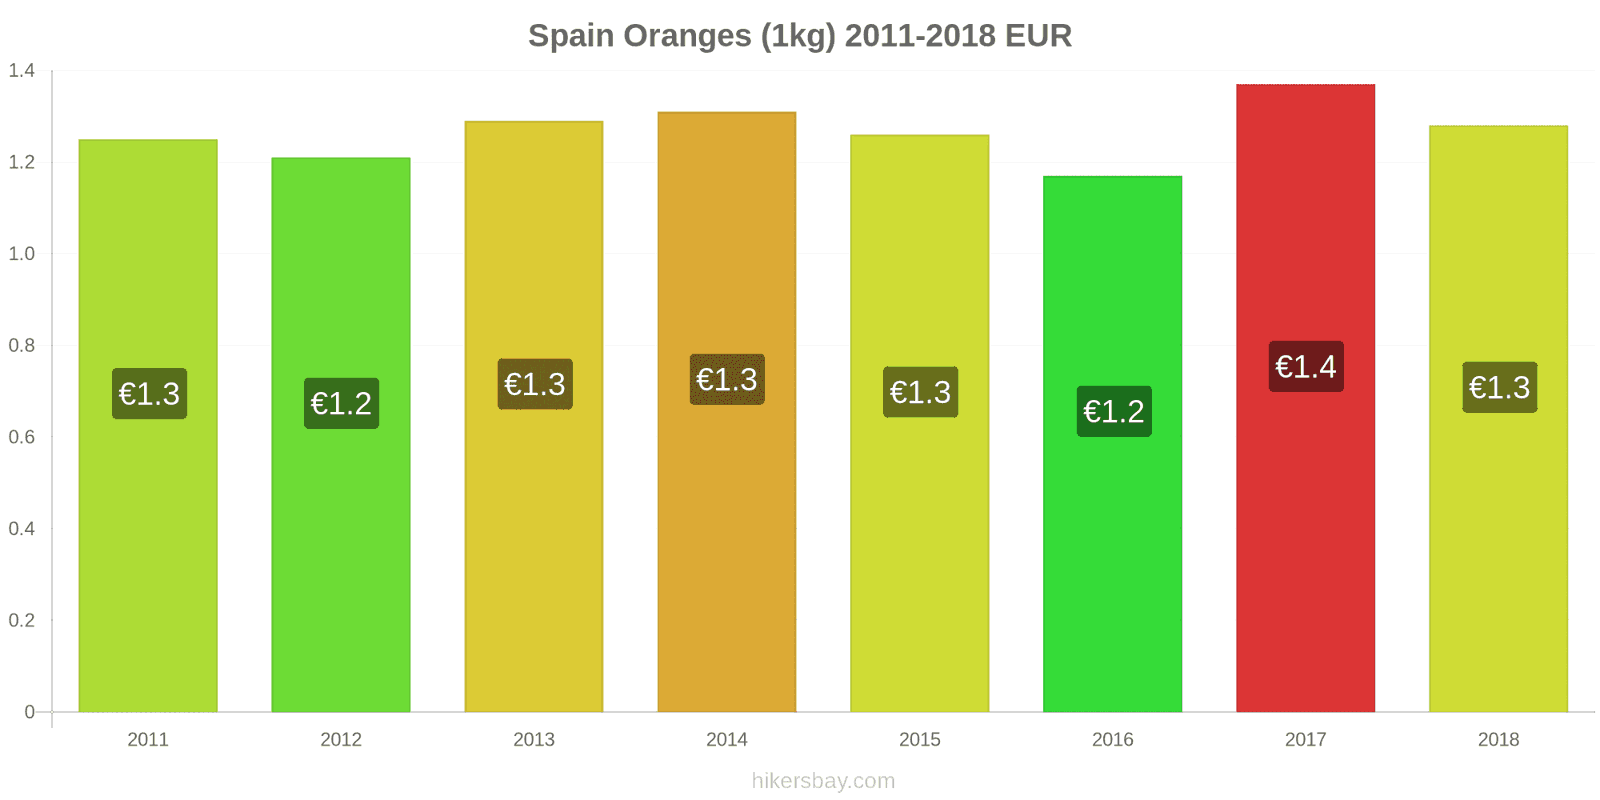 Spain price changes Oranges (1kg) hikersbay.com